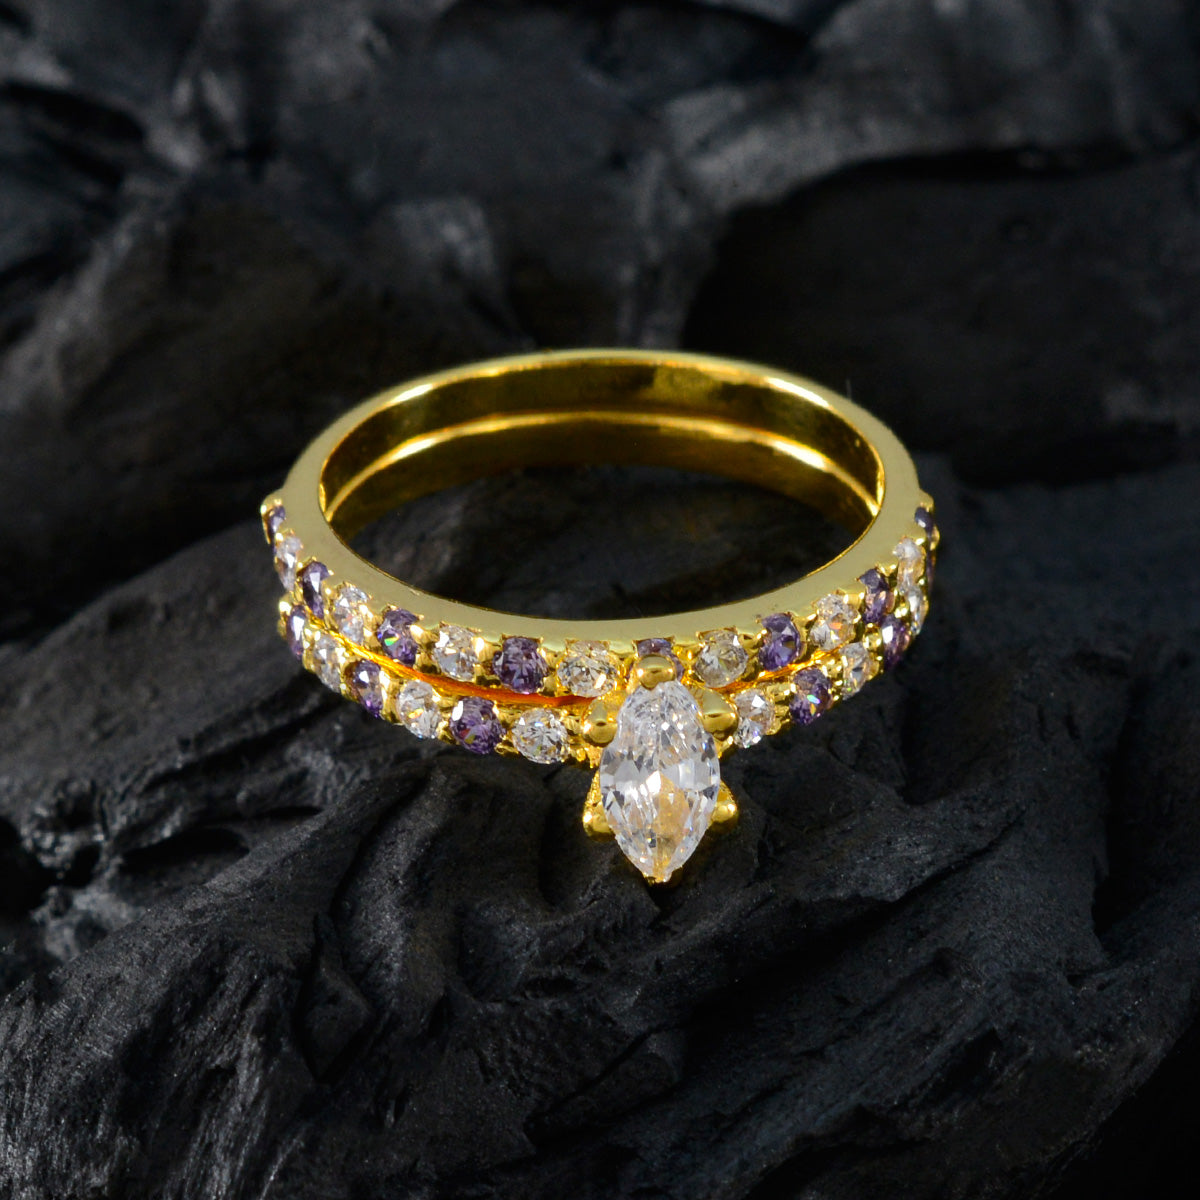 riyo attraente anello in argento con placcatura in oro giallo pietra di ametista a forma di marquise con montatura a punta gioielli firmati anello del black friday